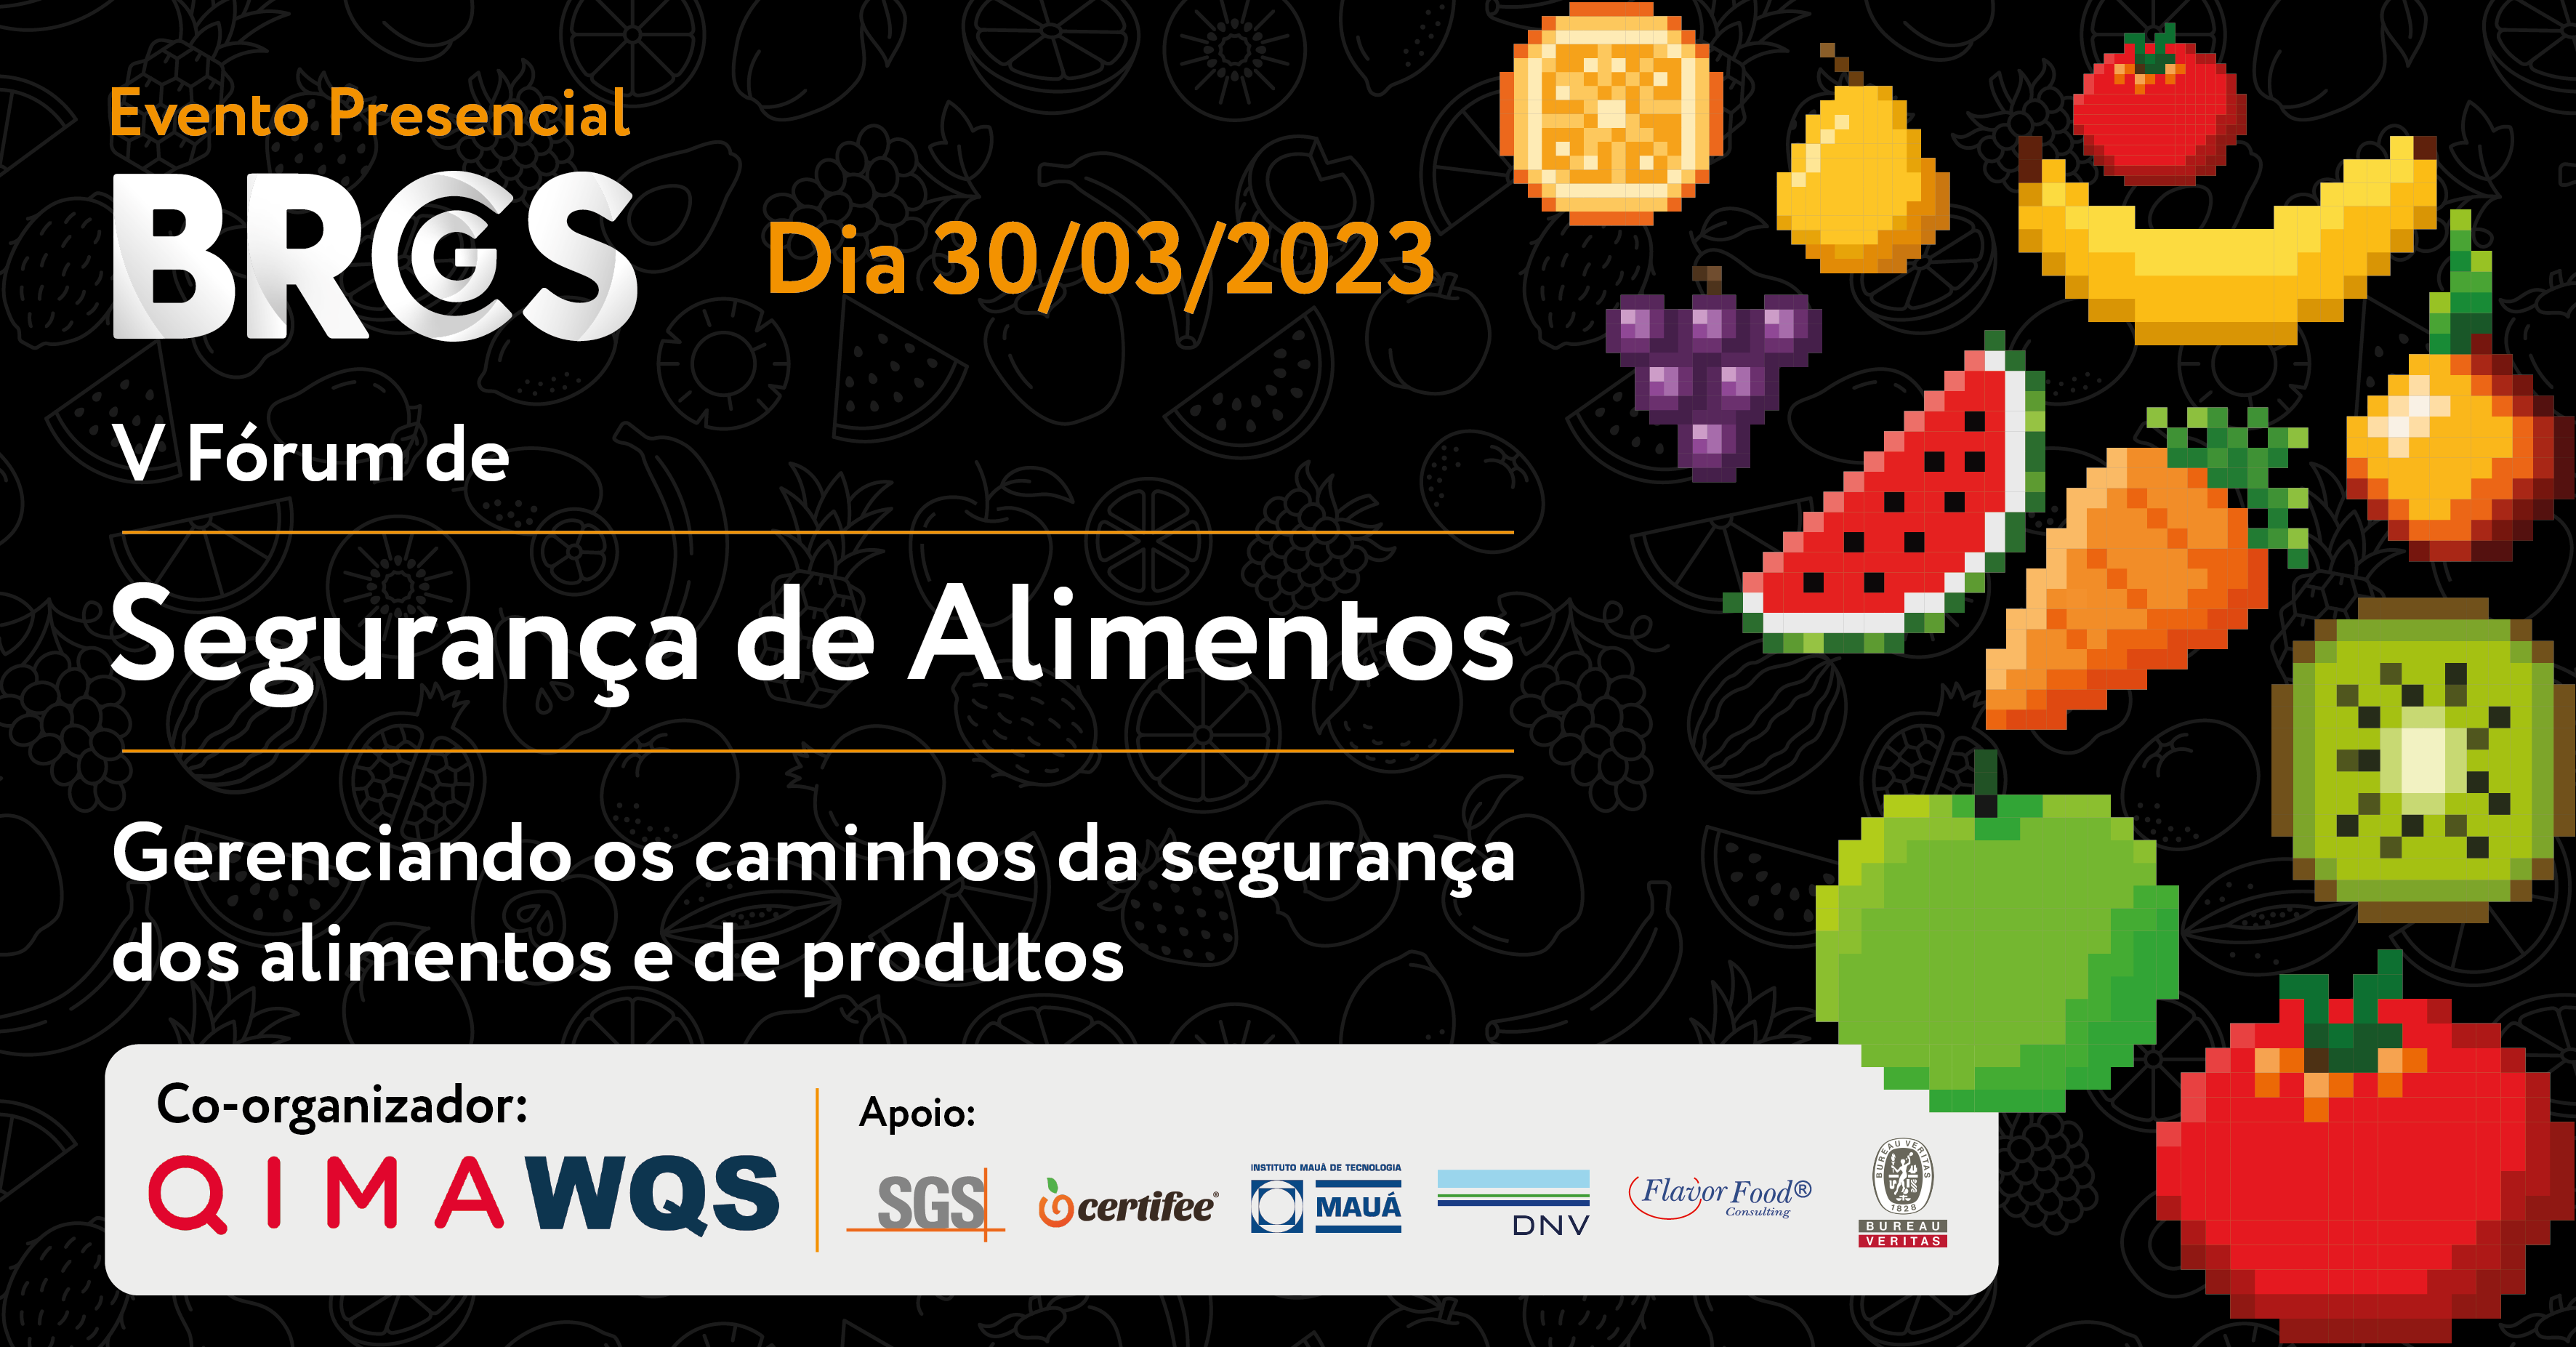 Food Safety Brazil reconhece empresas que investem em segurança